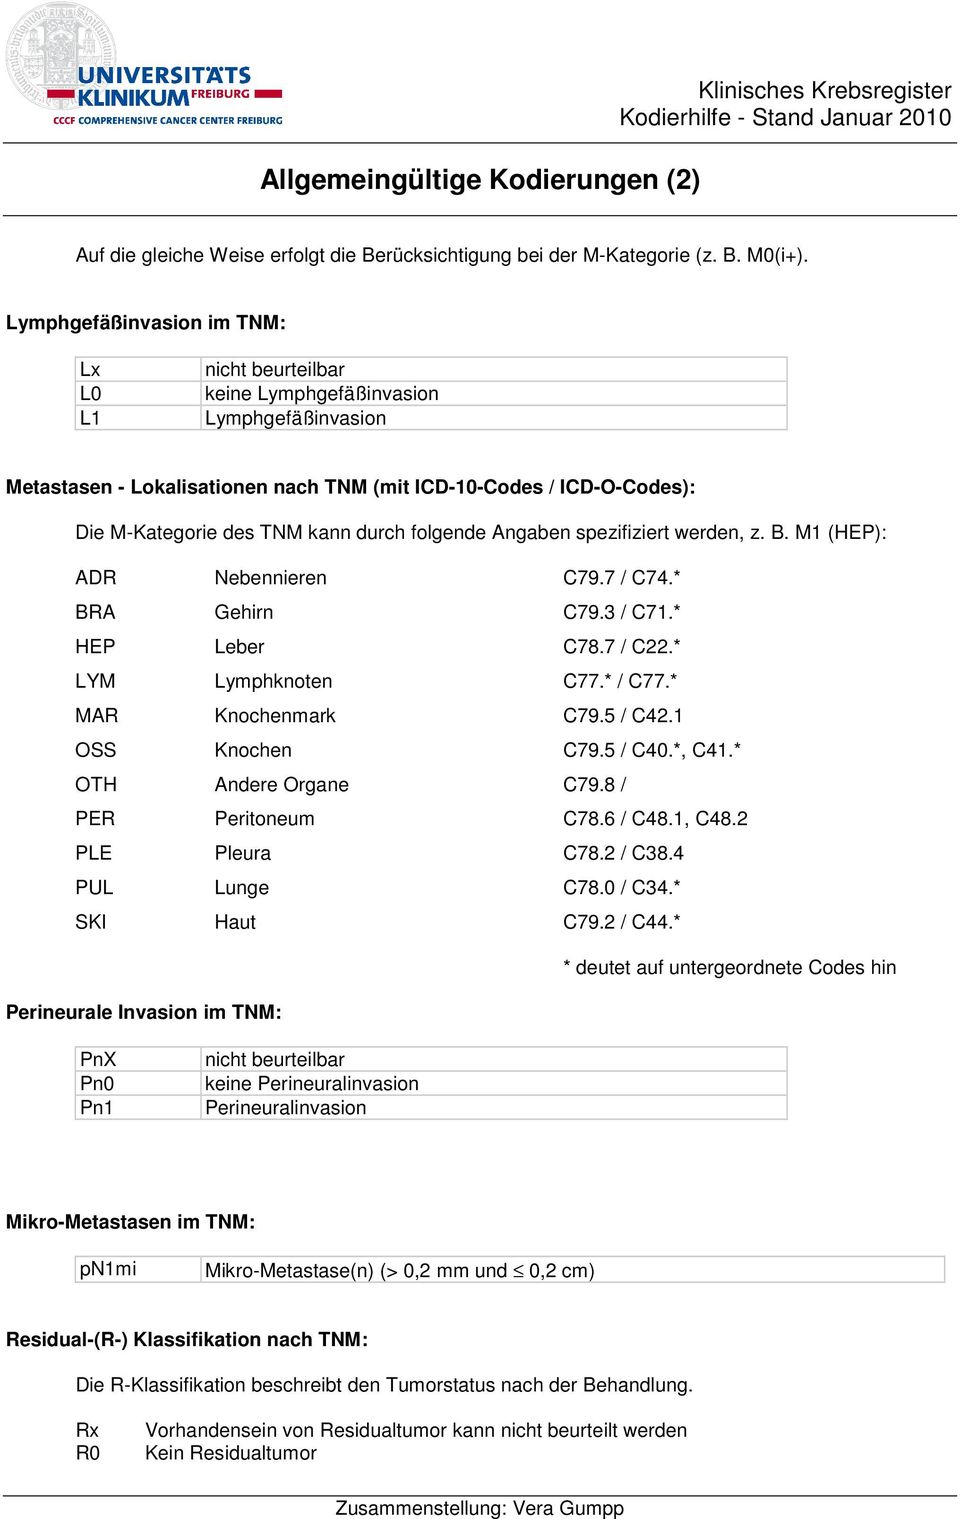 durch folgende Angaben spezifiziert werden, z. B. M1 (HEP): ADR Nebennieren C79.7 / C74.* BRA Gehirn C79.3 / C71.* HEP Leber C78.7 / C22.* LYM Lymphknoten C77.* / C77.* MAR Knochenmark C79.5 / C42.